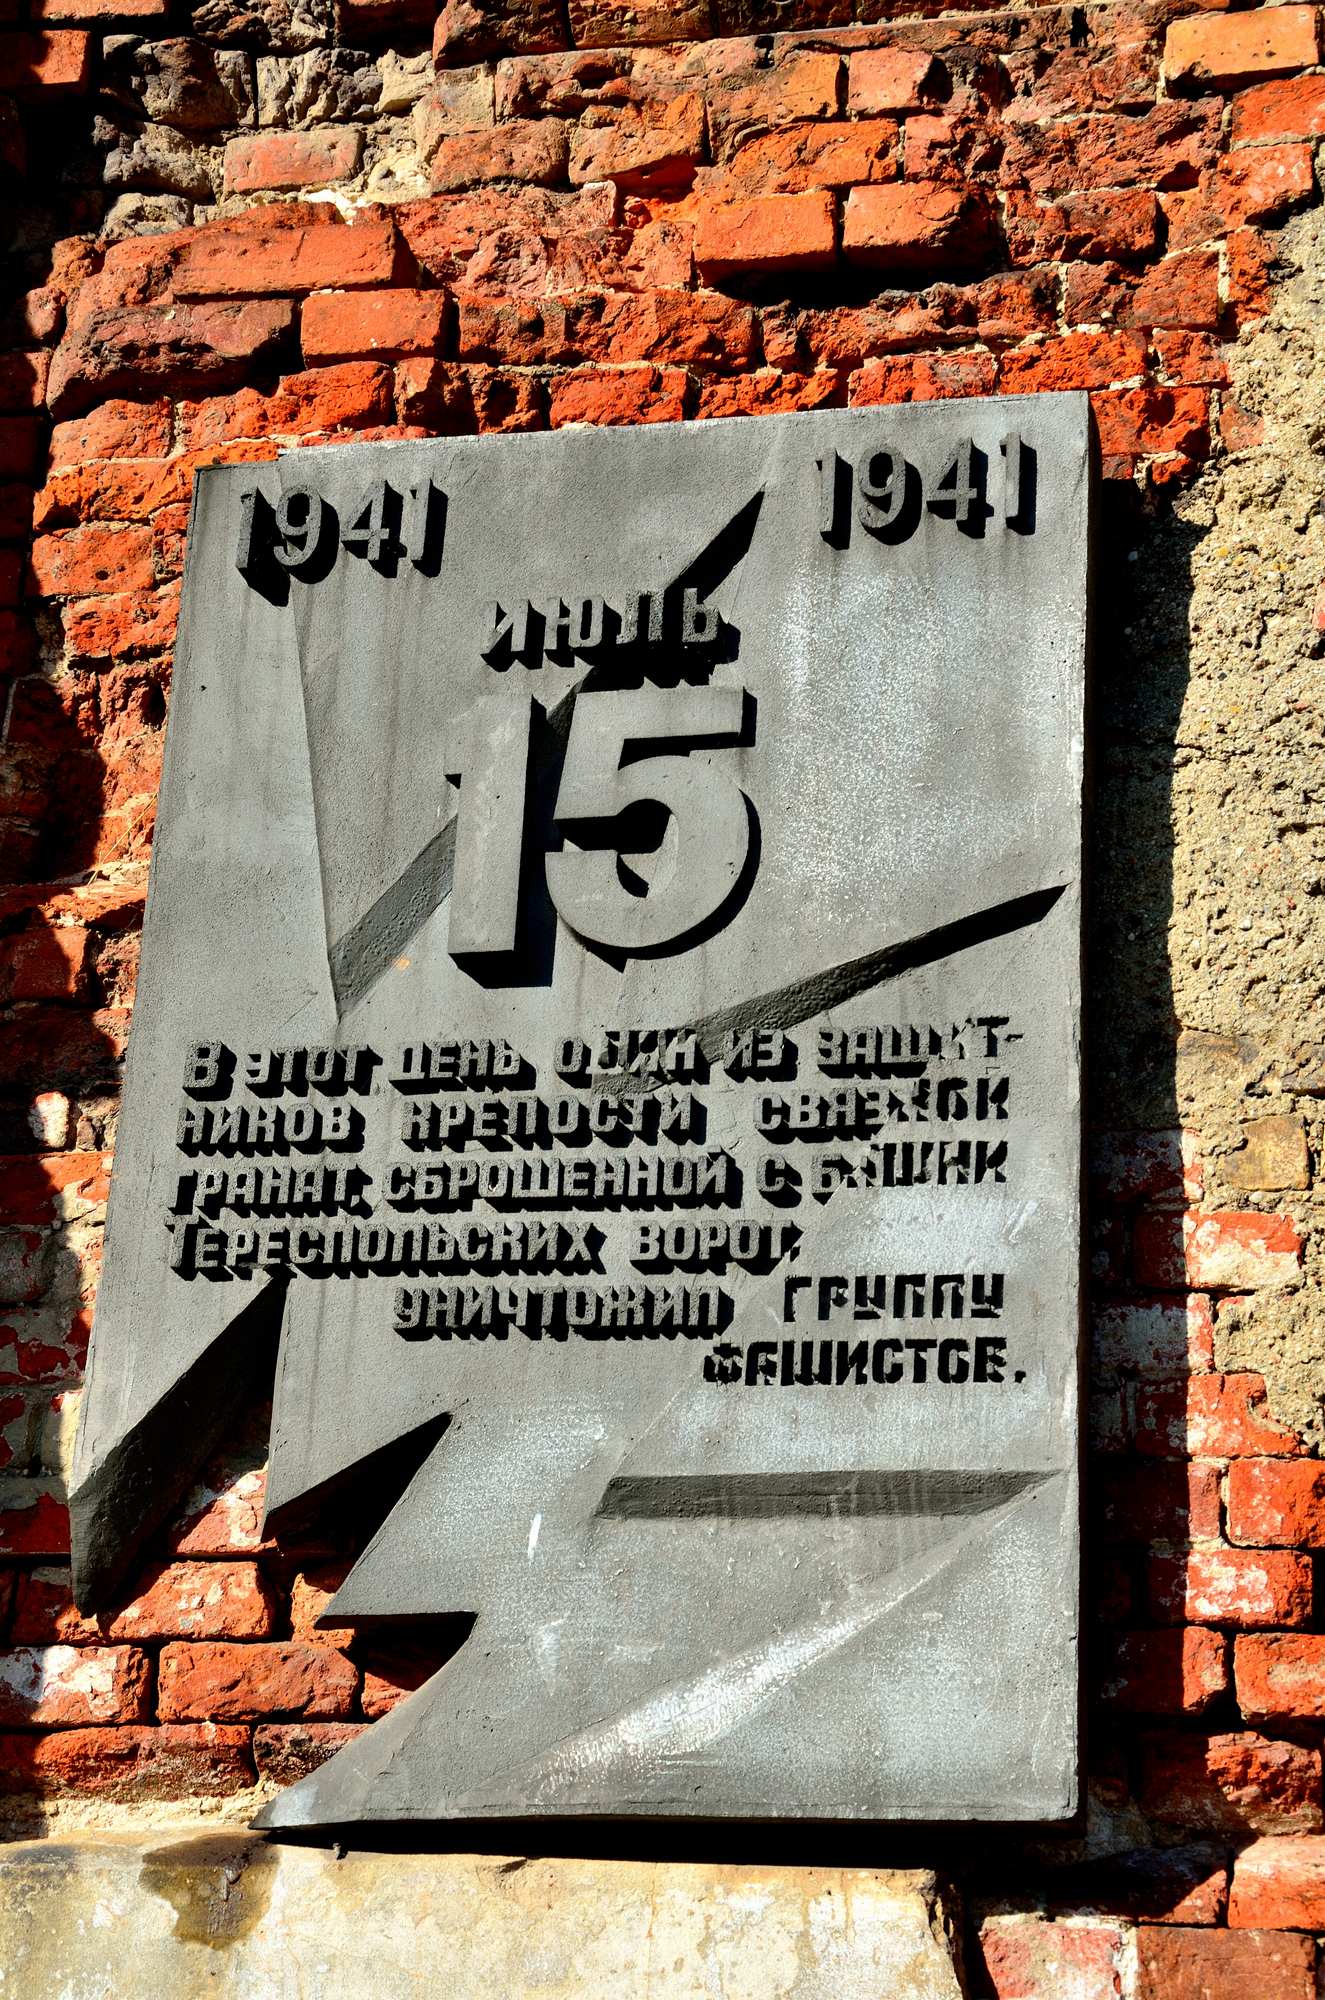 В этот день один из защитников крепости связкой гранат, сброшенной с башни Тереспольских ворот, уничтожил группу фашистов.